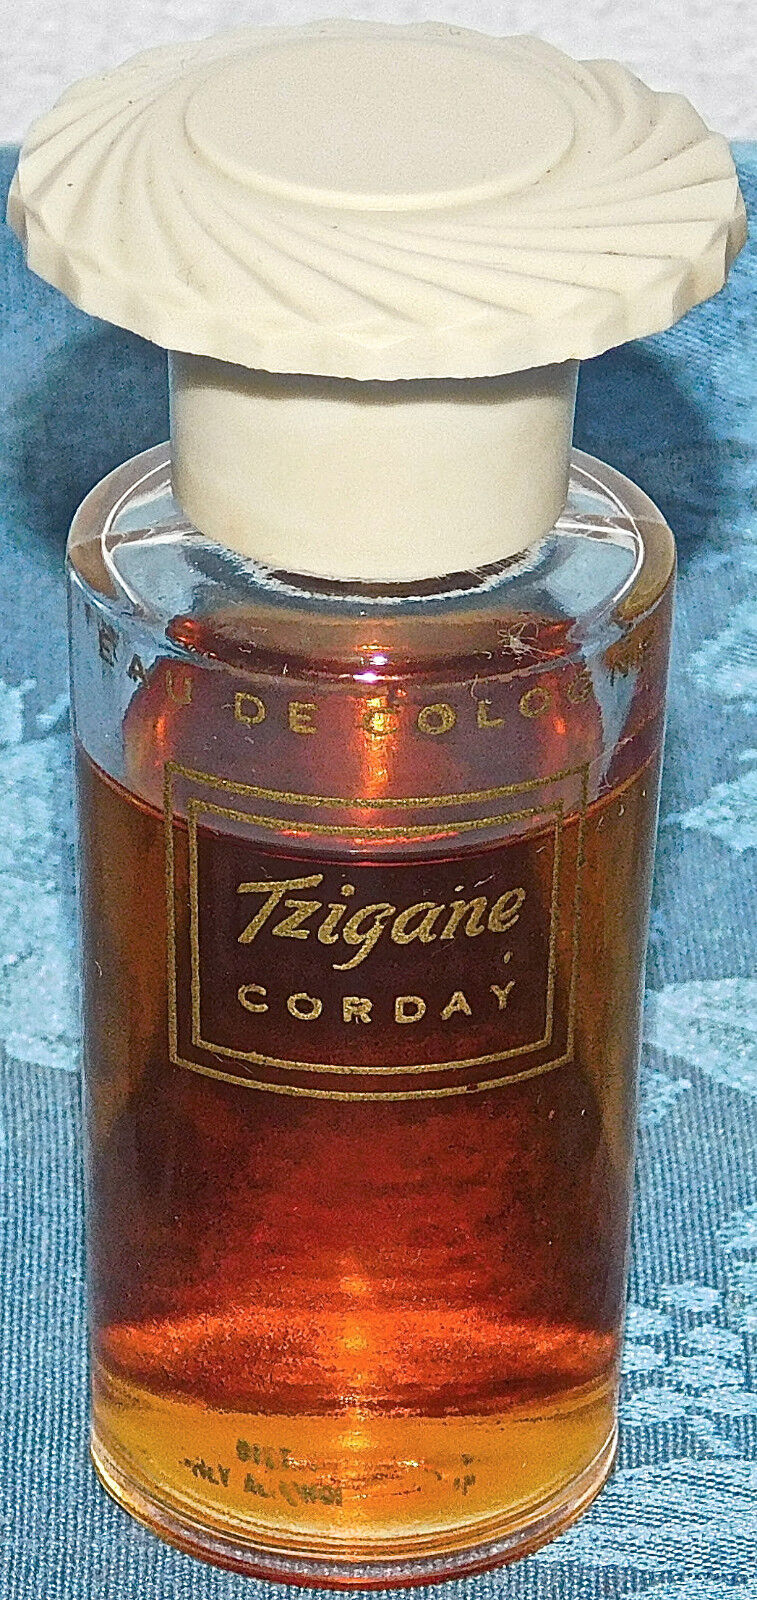 Vintage Corday Tzigane EAU DE COLOGNE SUPER RARE 1 OZ BOTTLE 80% FULL 30'S 40'S?